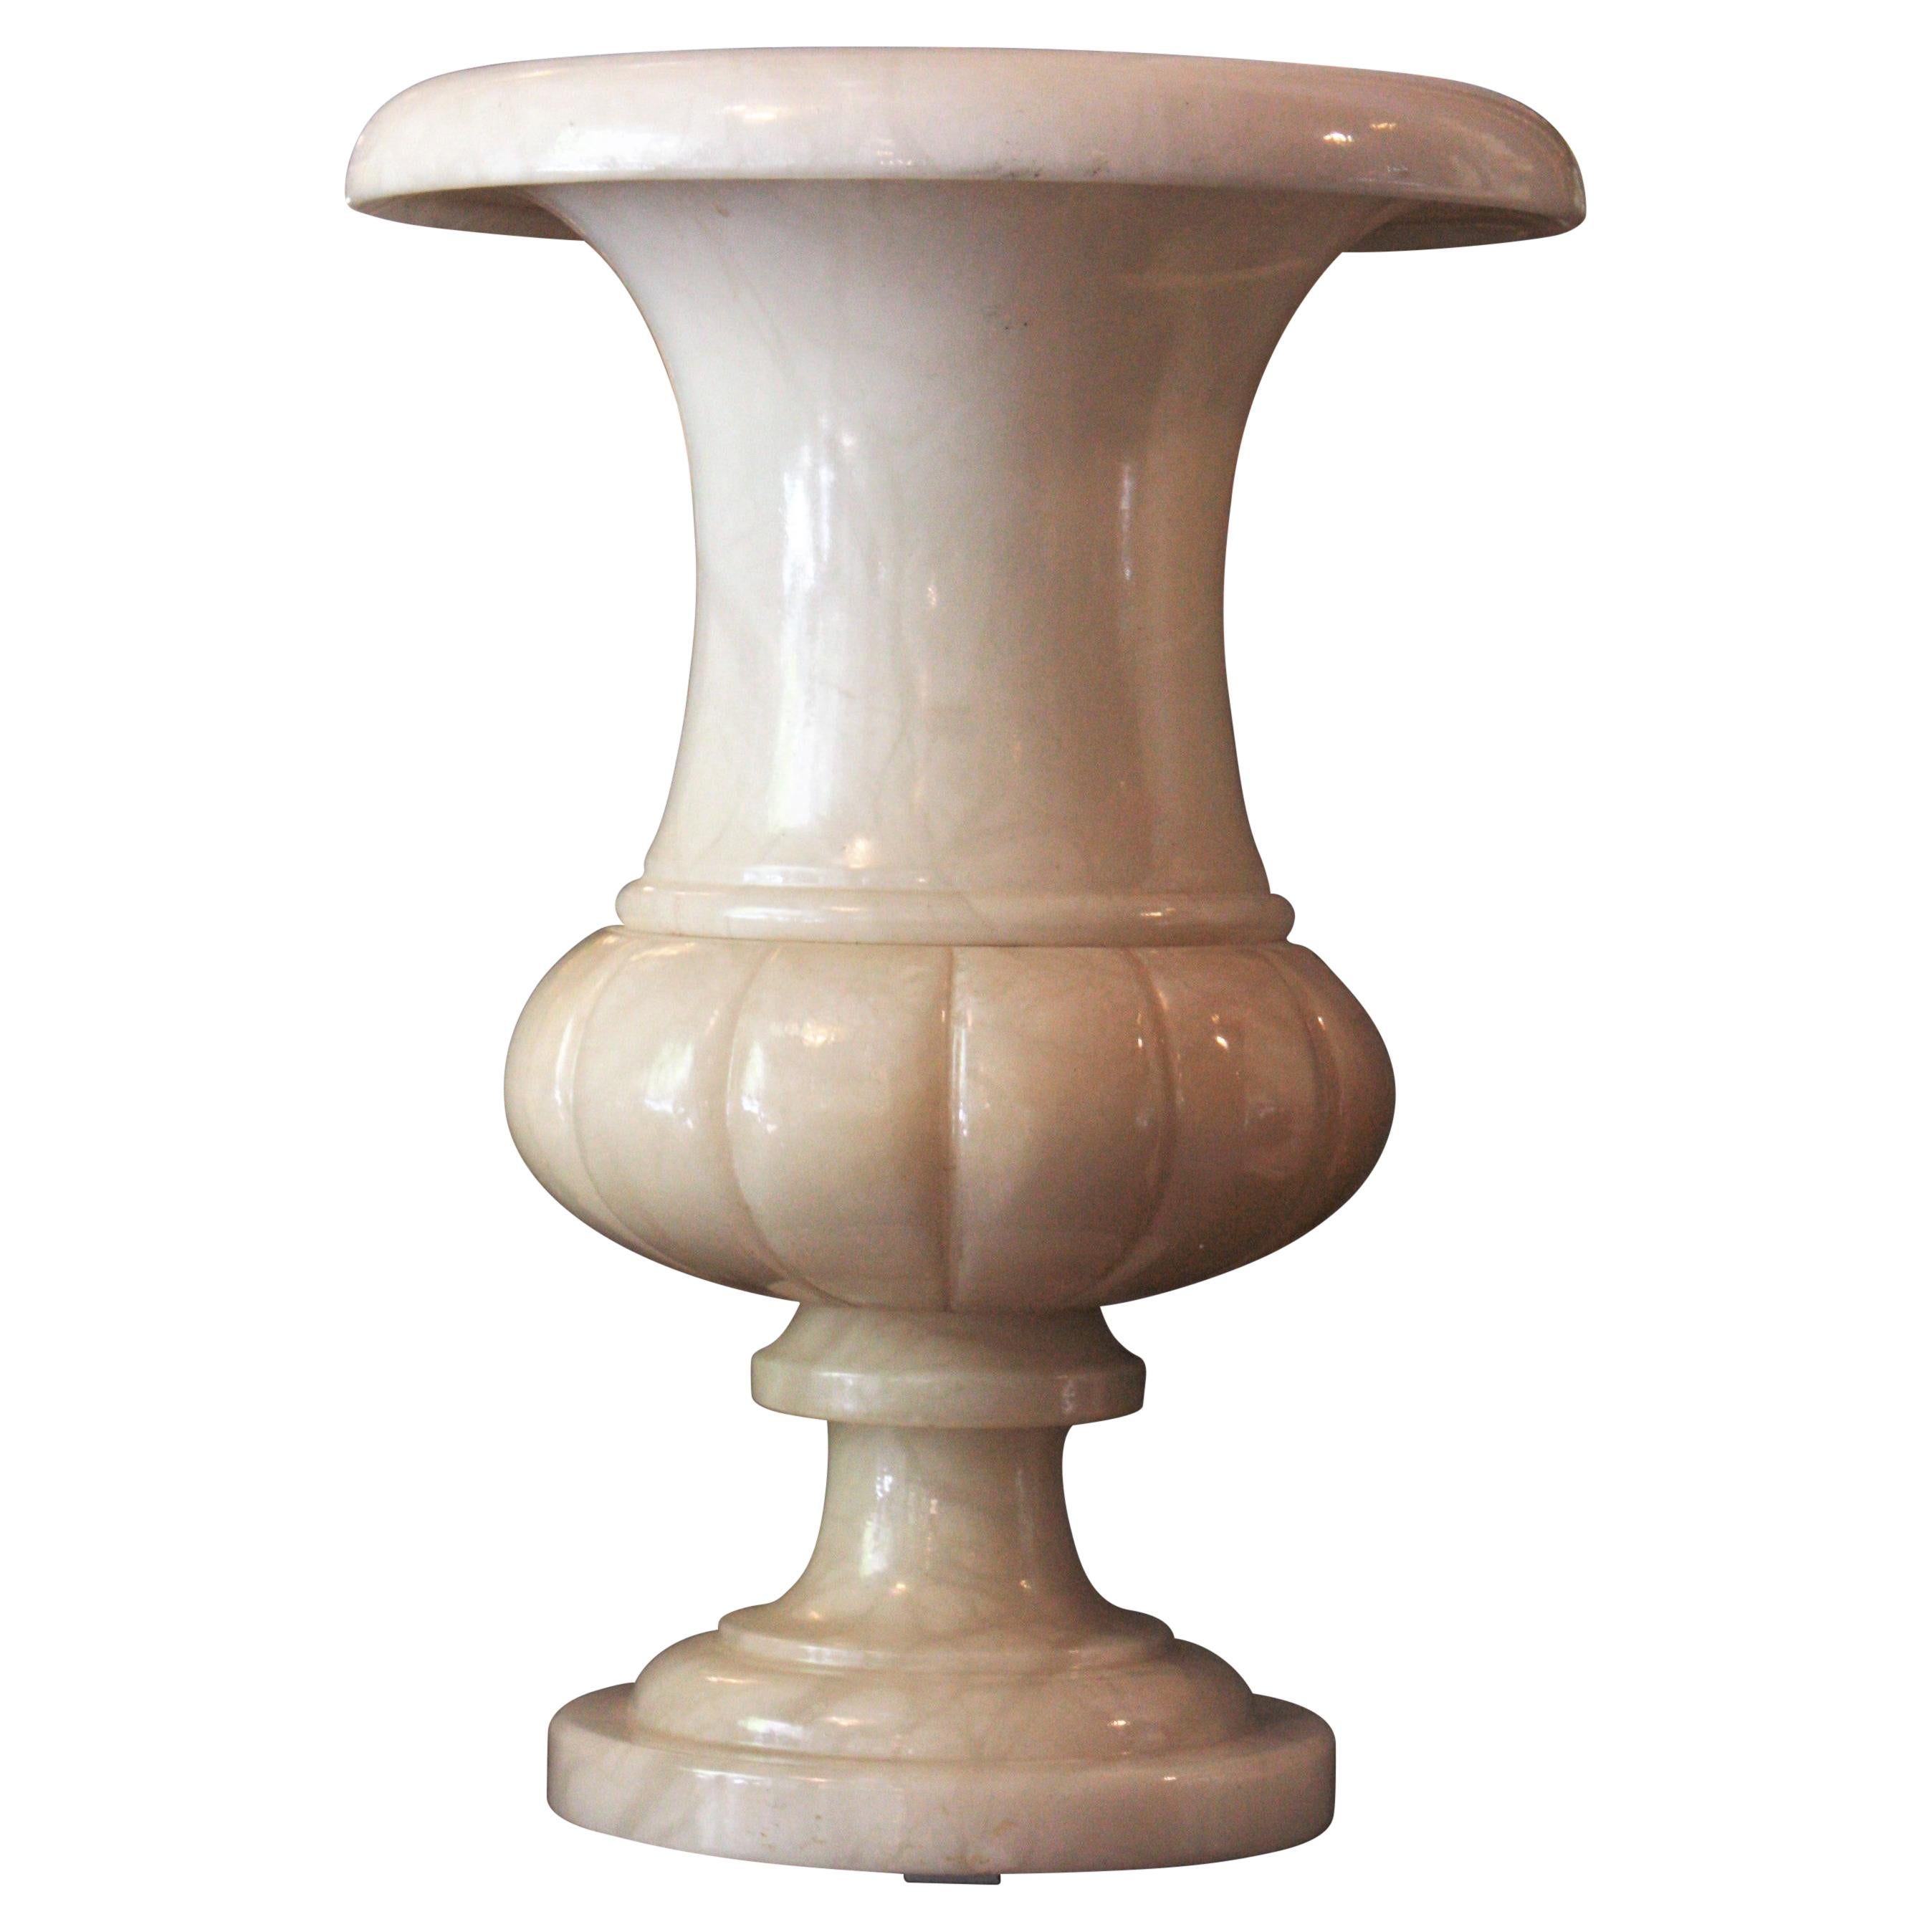 Elegante Alabaster-Urnen-Tischlampe mit neoklassischem Design. Spanien, 1940-1950er Jahre
Diese gedrehte Alabaster-Urne mit klassischem Design hat geschnitzte Details am unteren Teil. Sie hat eine schöne Farbe und Patina, die beim Anzünden ein